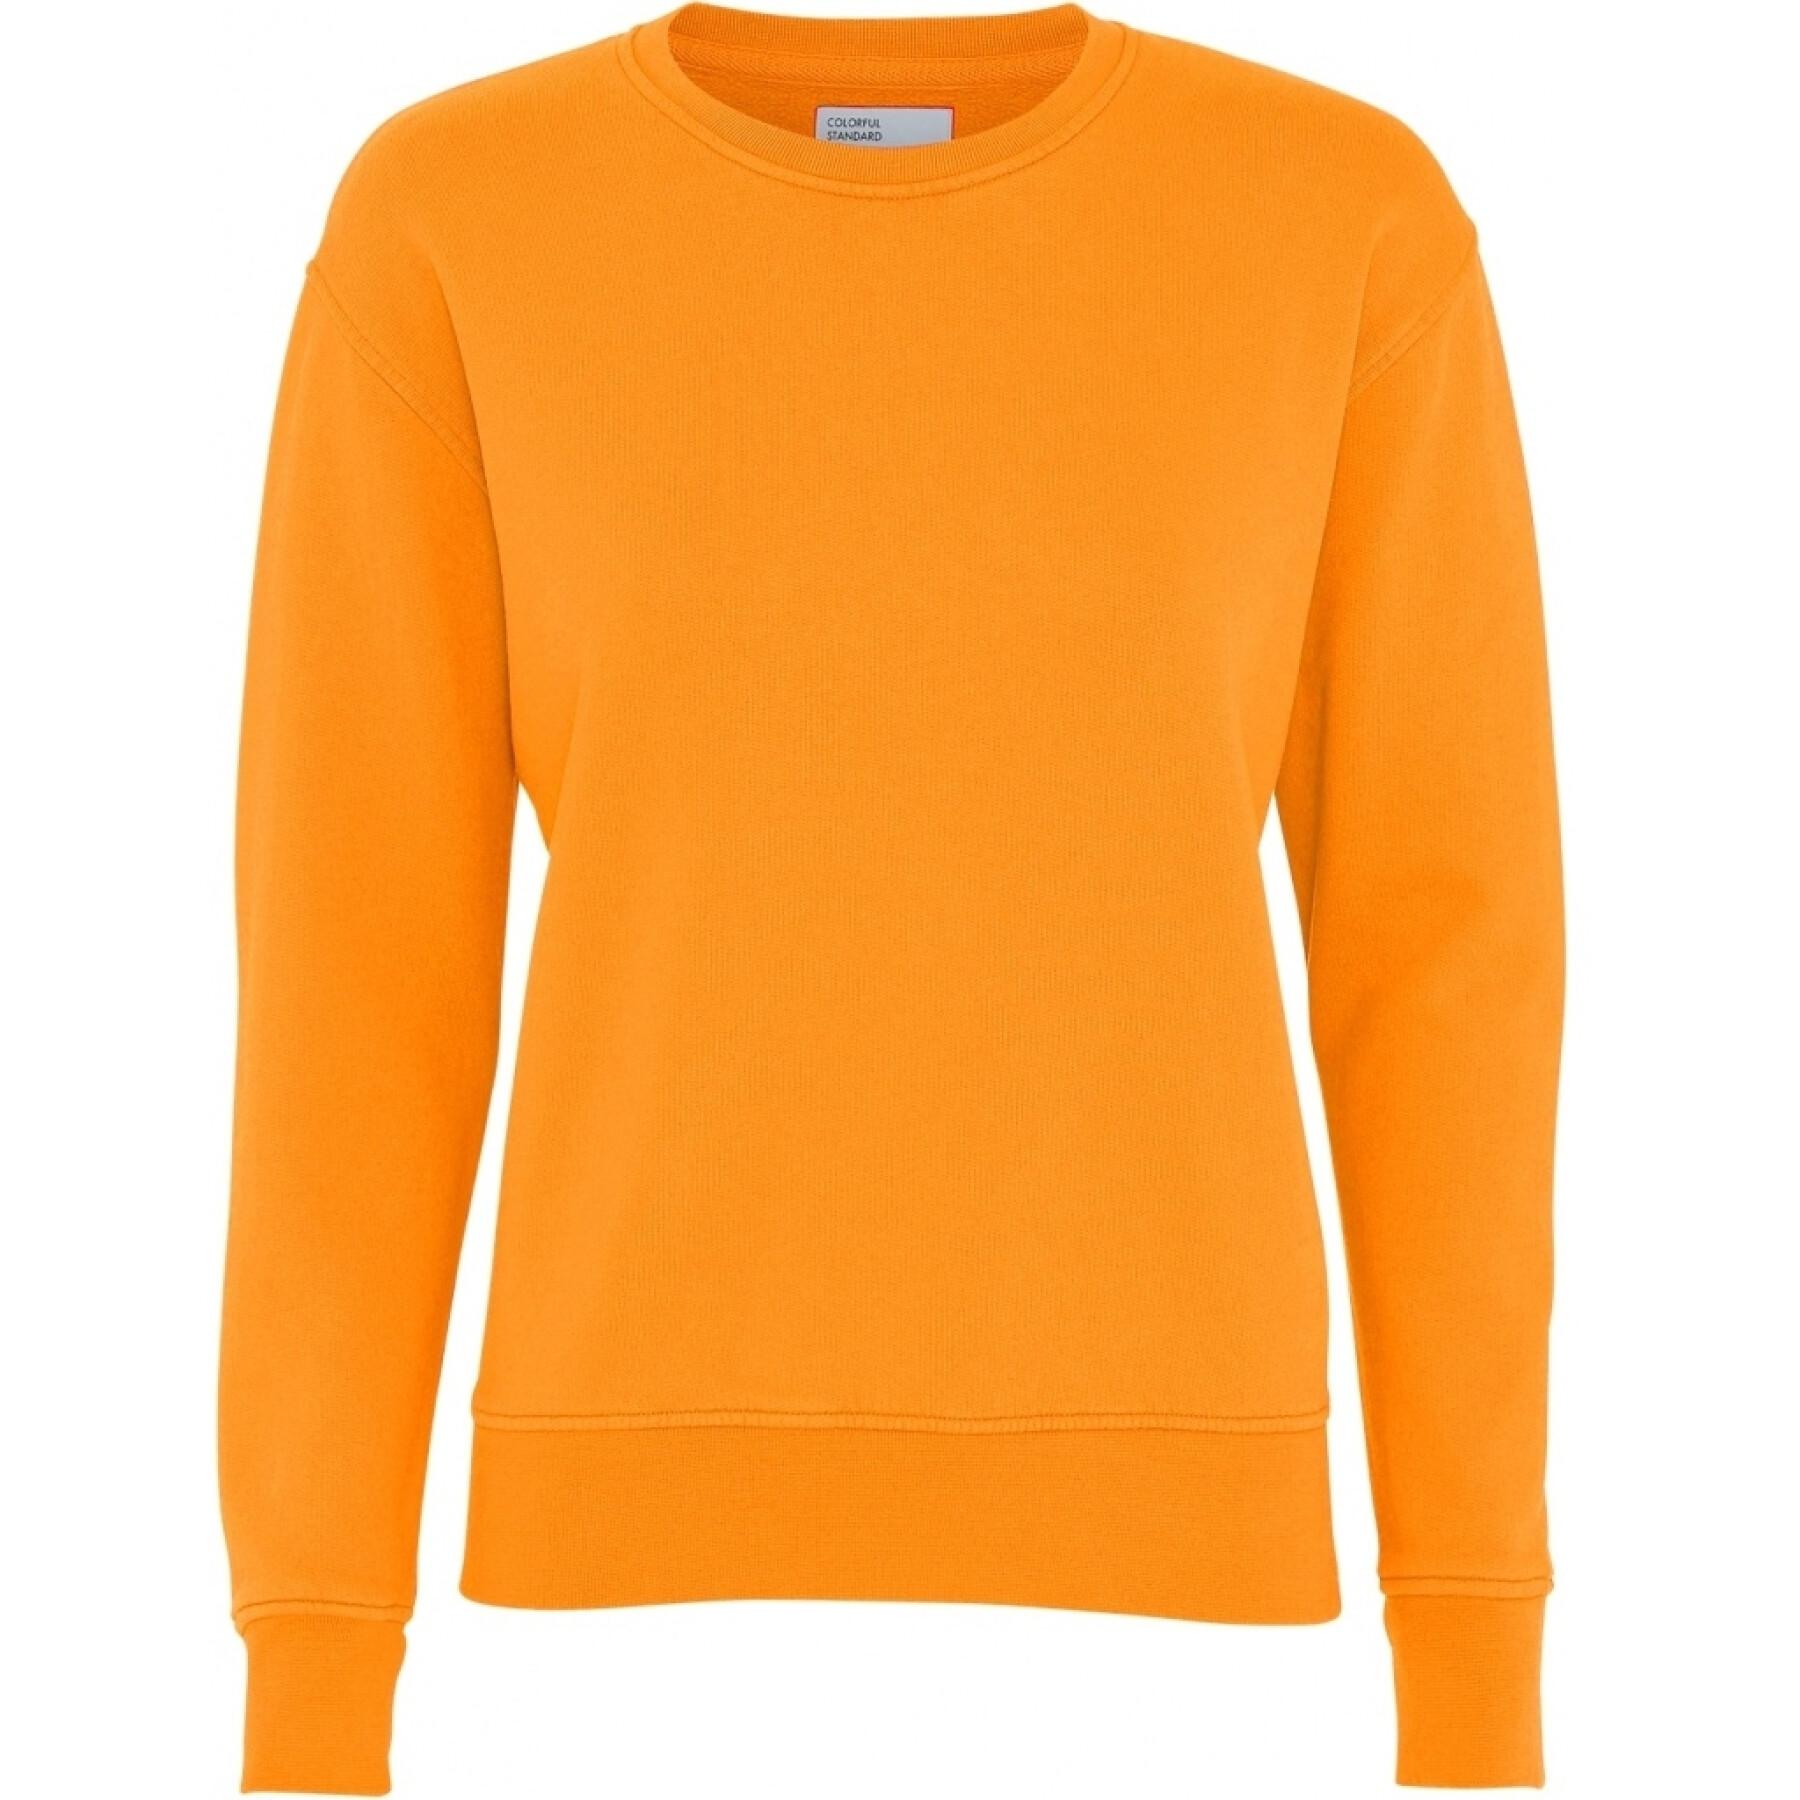 Jersey de cuello redondo para mujer Colorful Standard Classic Organic sunny orange